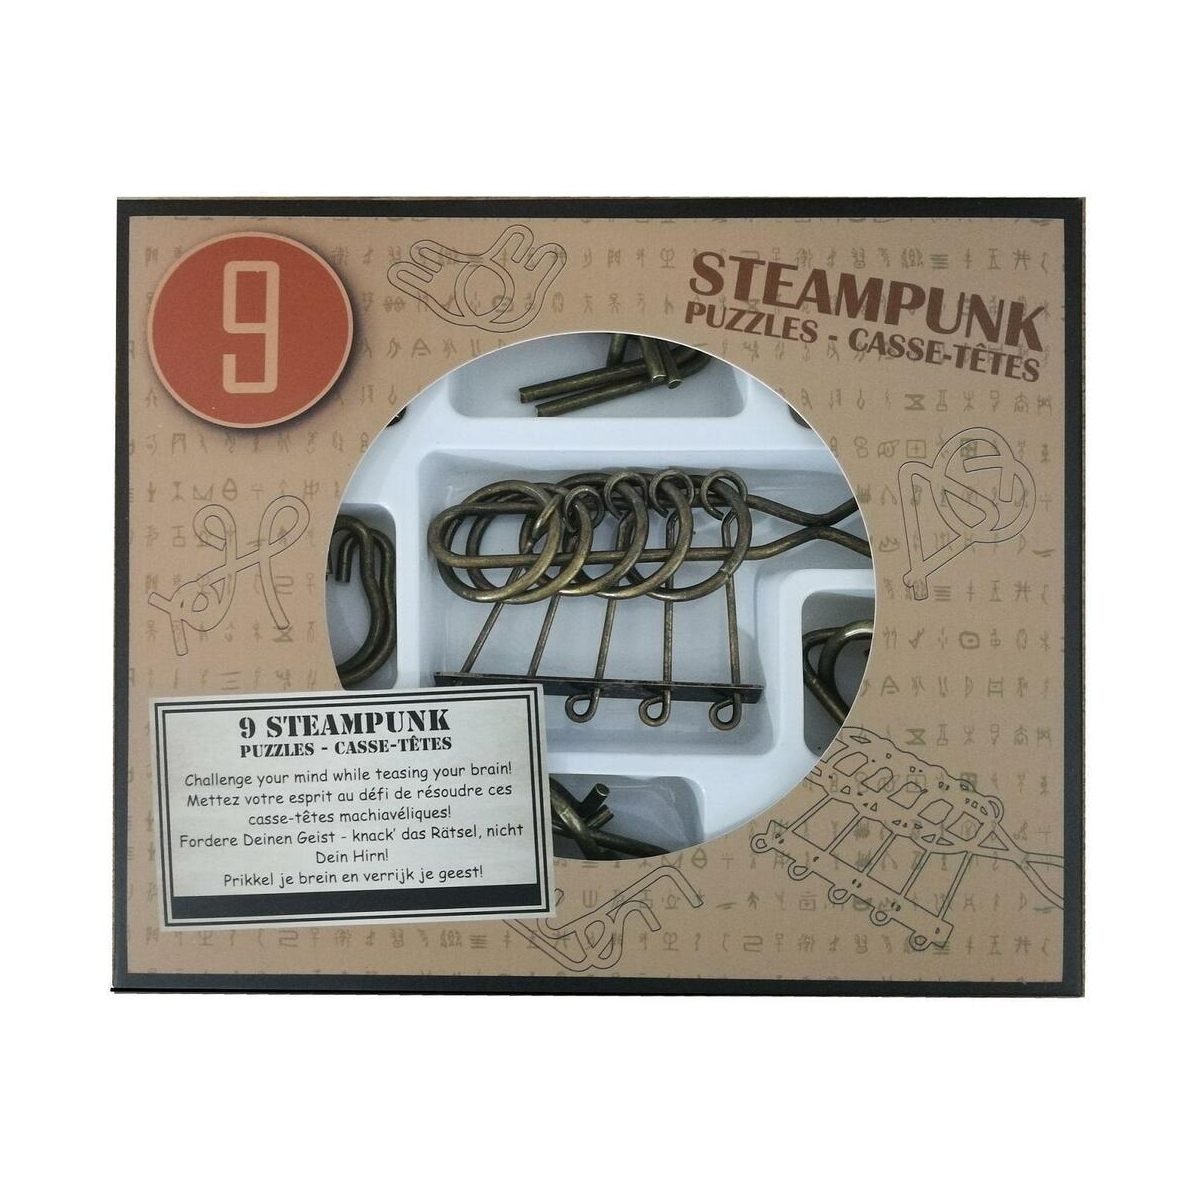 EUREKA Steampunk Puzzles Puzzle 52473200 in erhältlich) 9 brauner (nur Puzzles Box Display im *-**** 